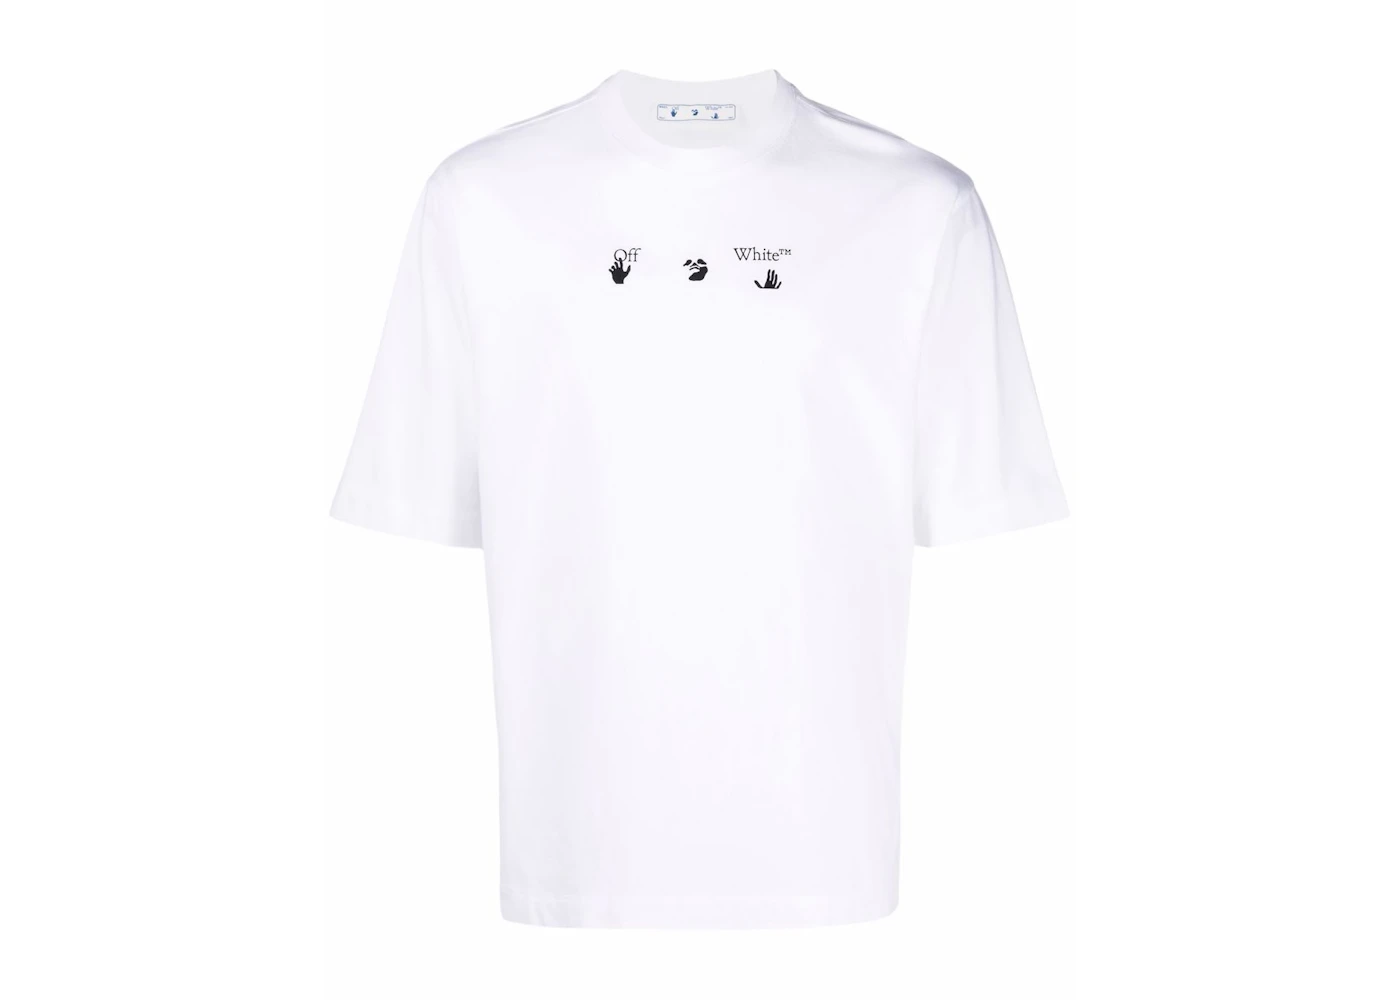 OFF-WHITE Arrows Tree Print T-Shirt White Men's - FW21 - US